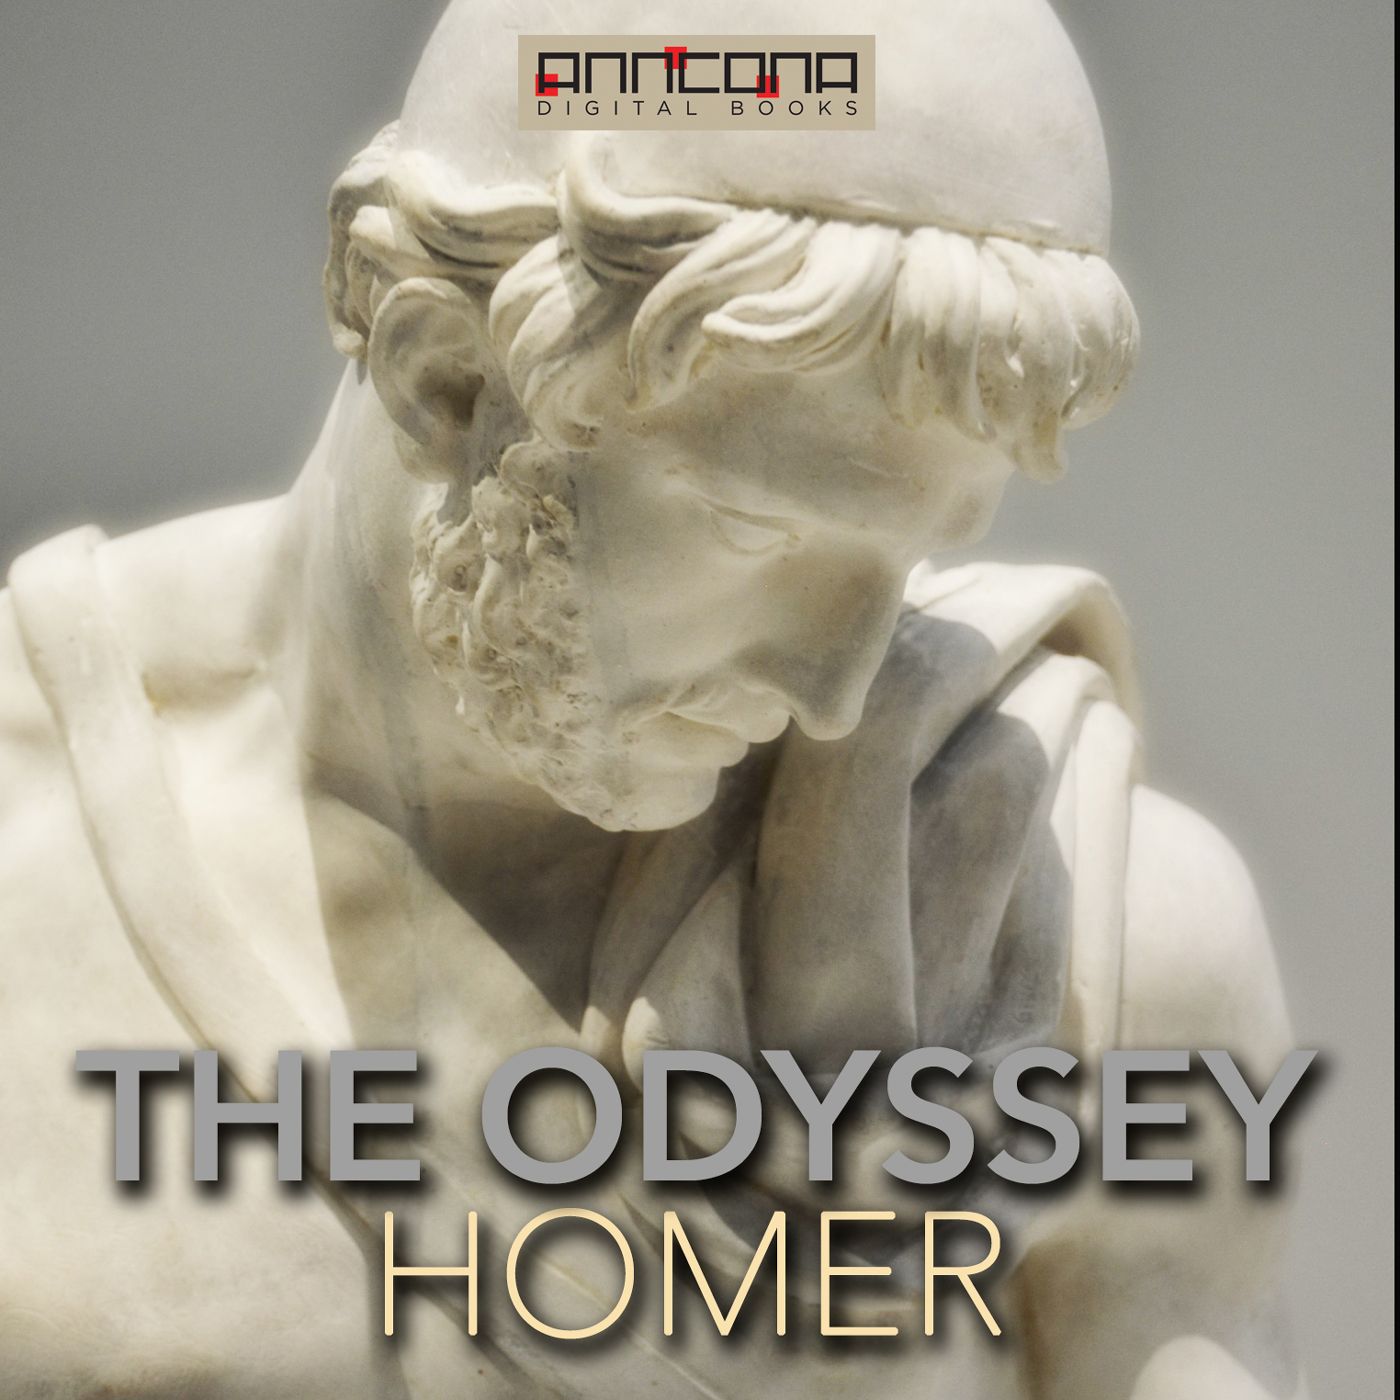 The Odyssey, Samuel Butler translation, ljudbok av Homer